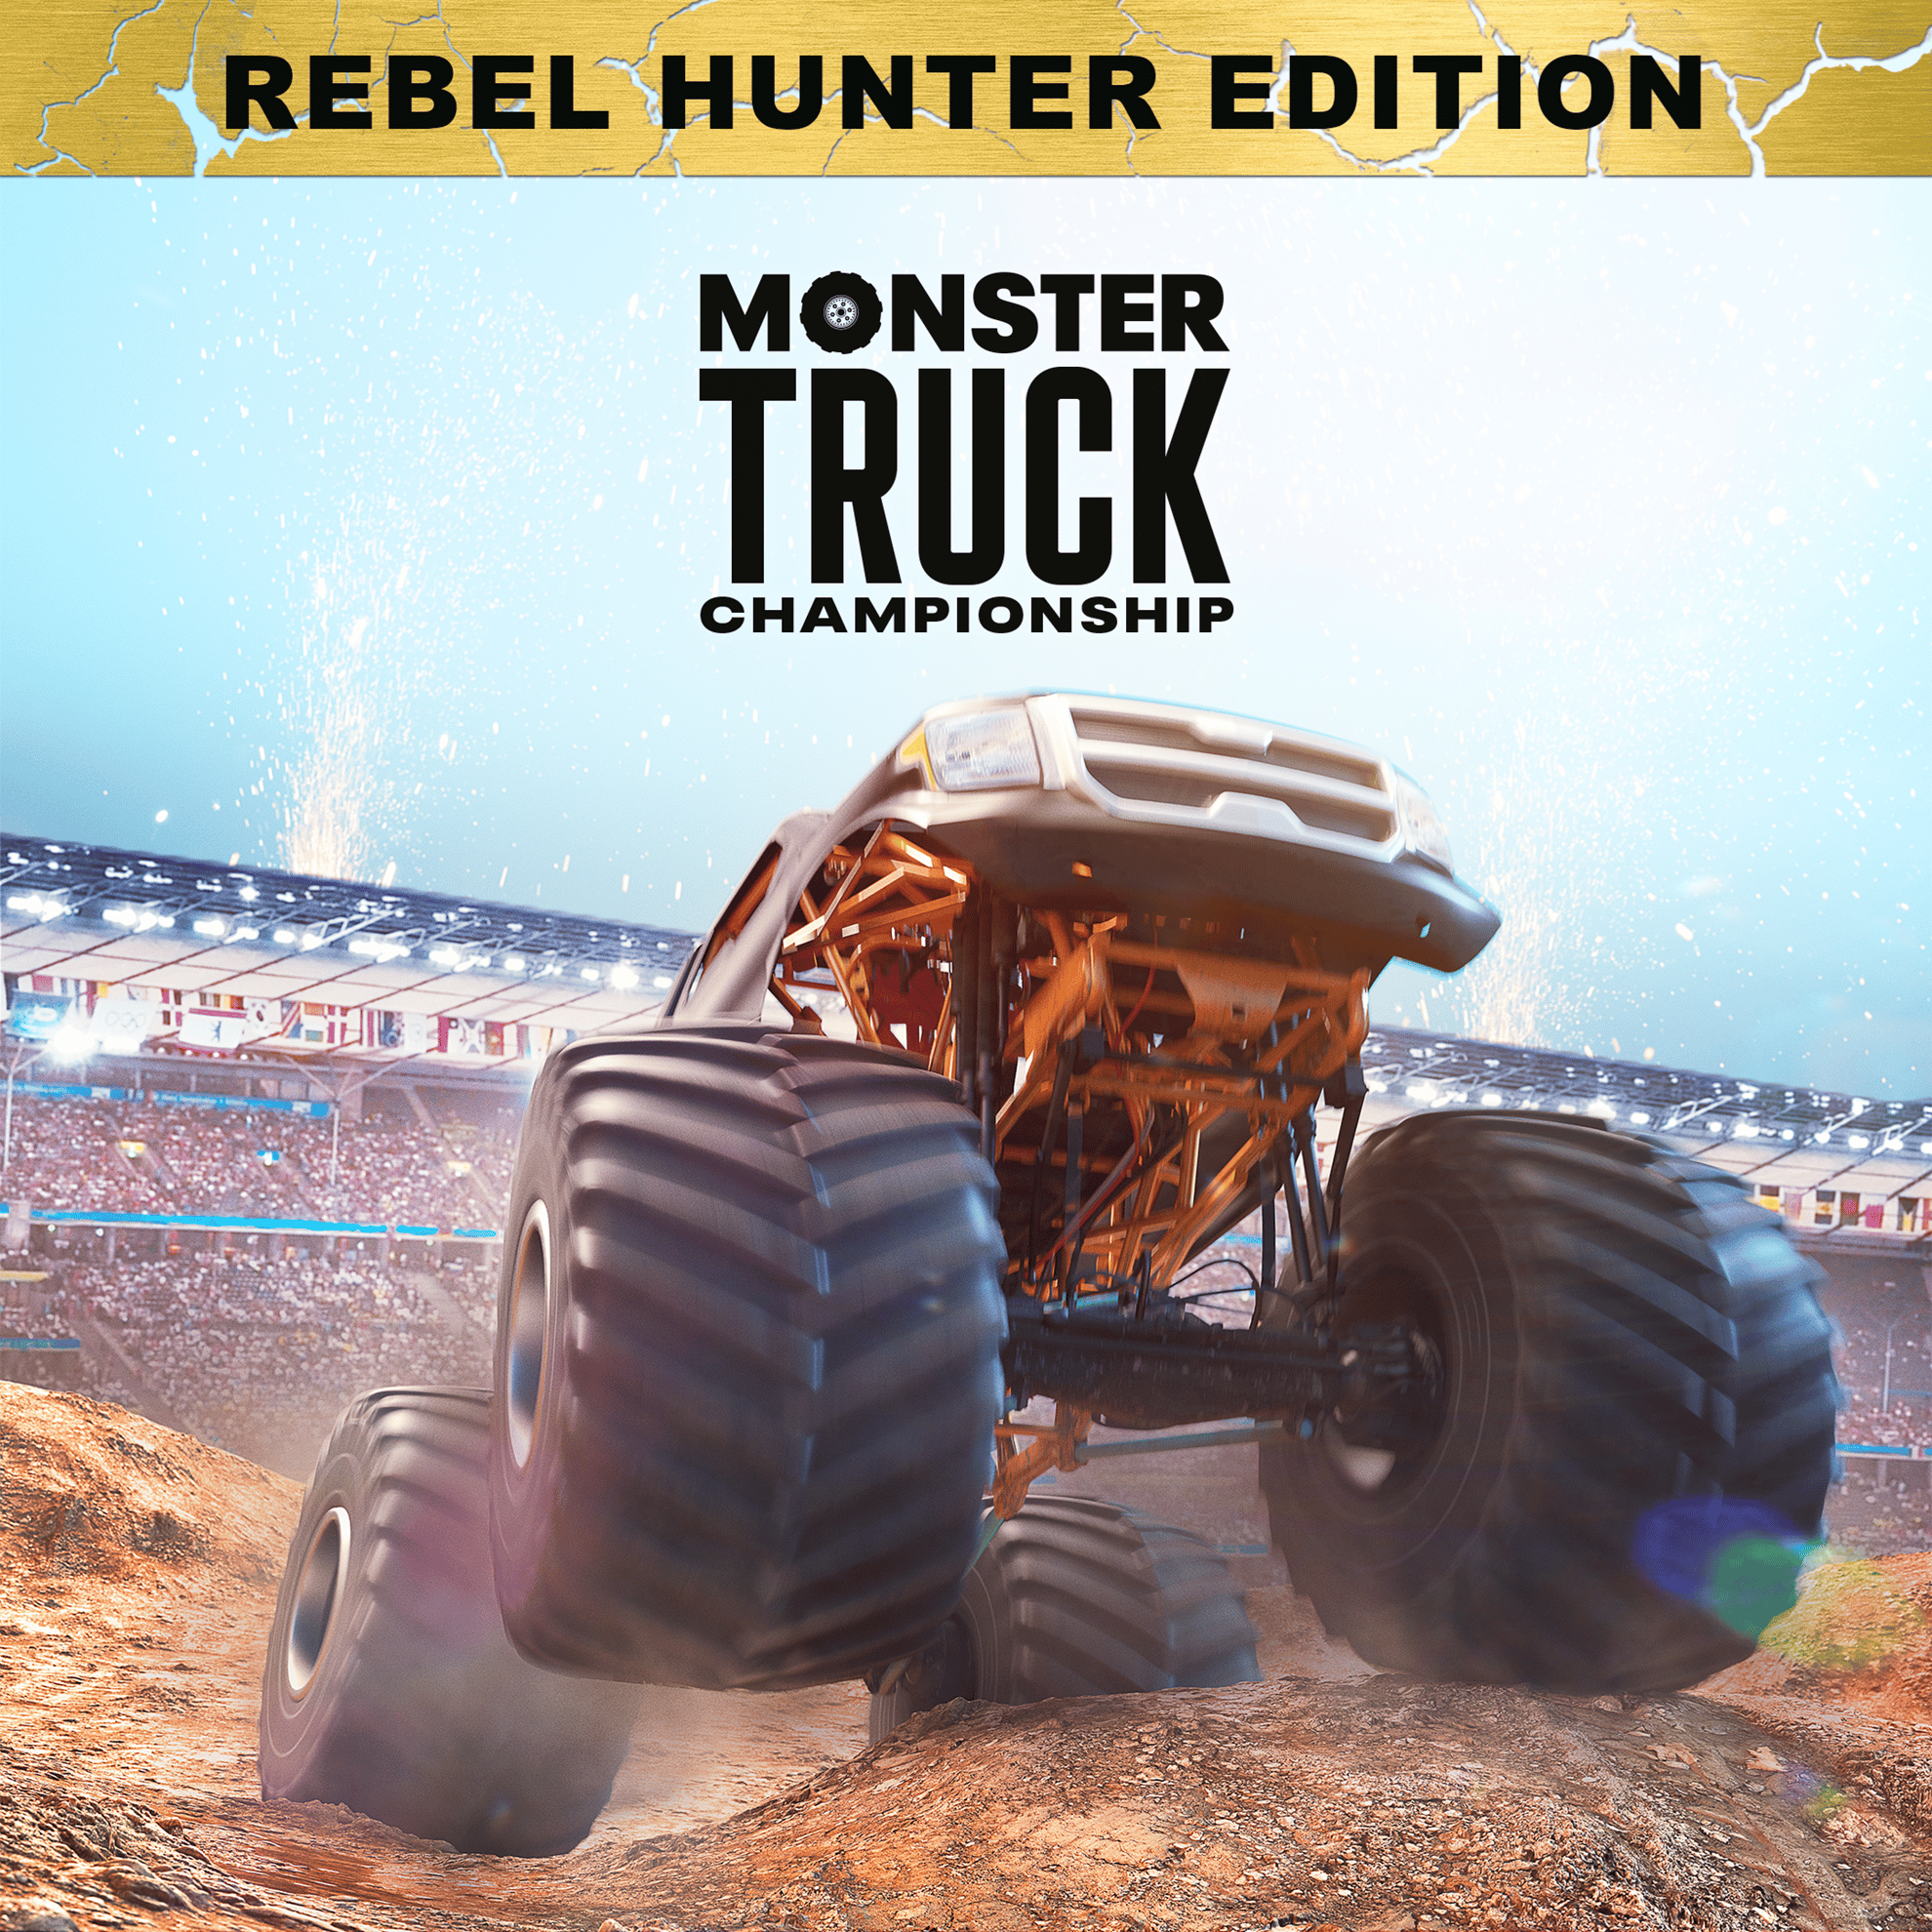 Monster Truck Championship Rebel Hunter Edition | ROW (bc8e255f-63ff-4240-ba11-a54bd5967a9e)